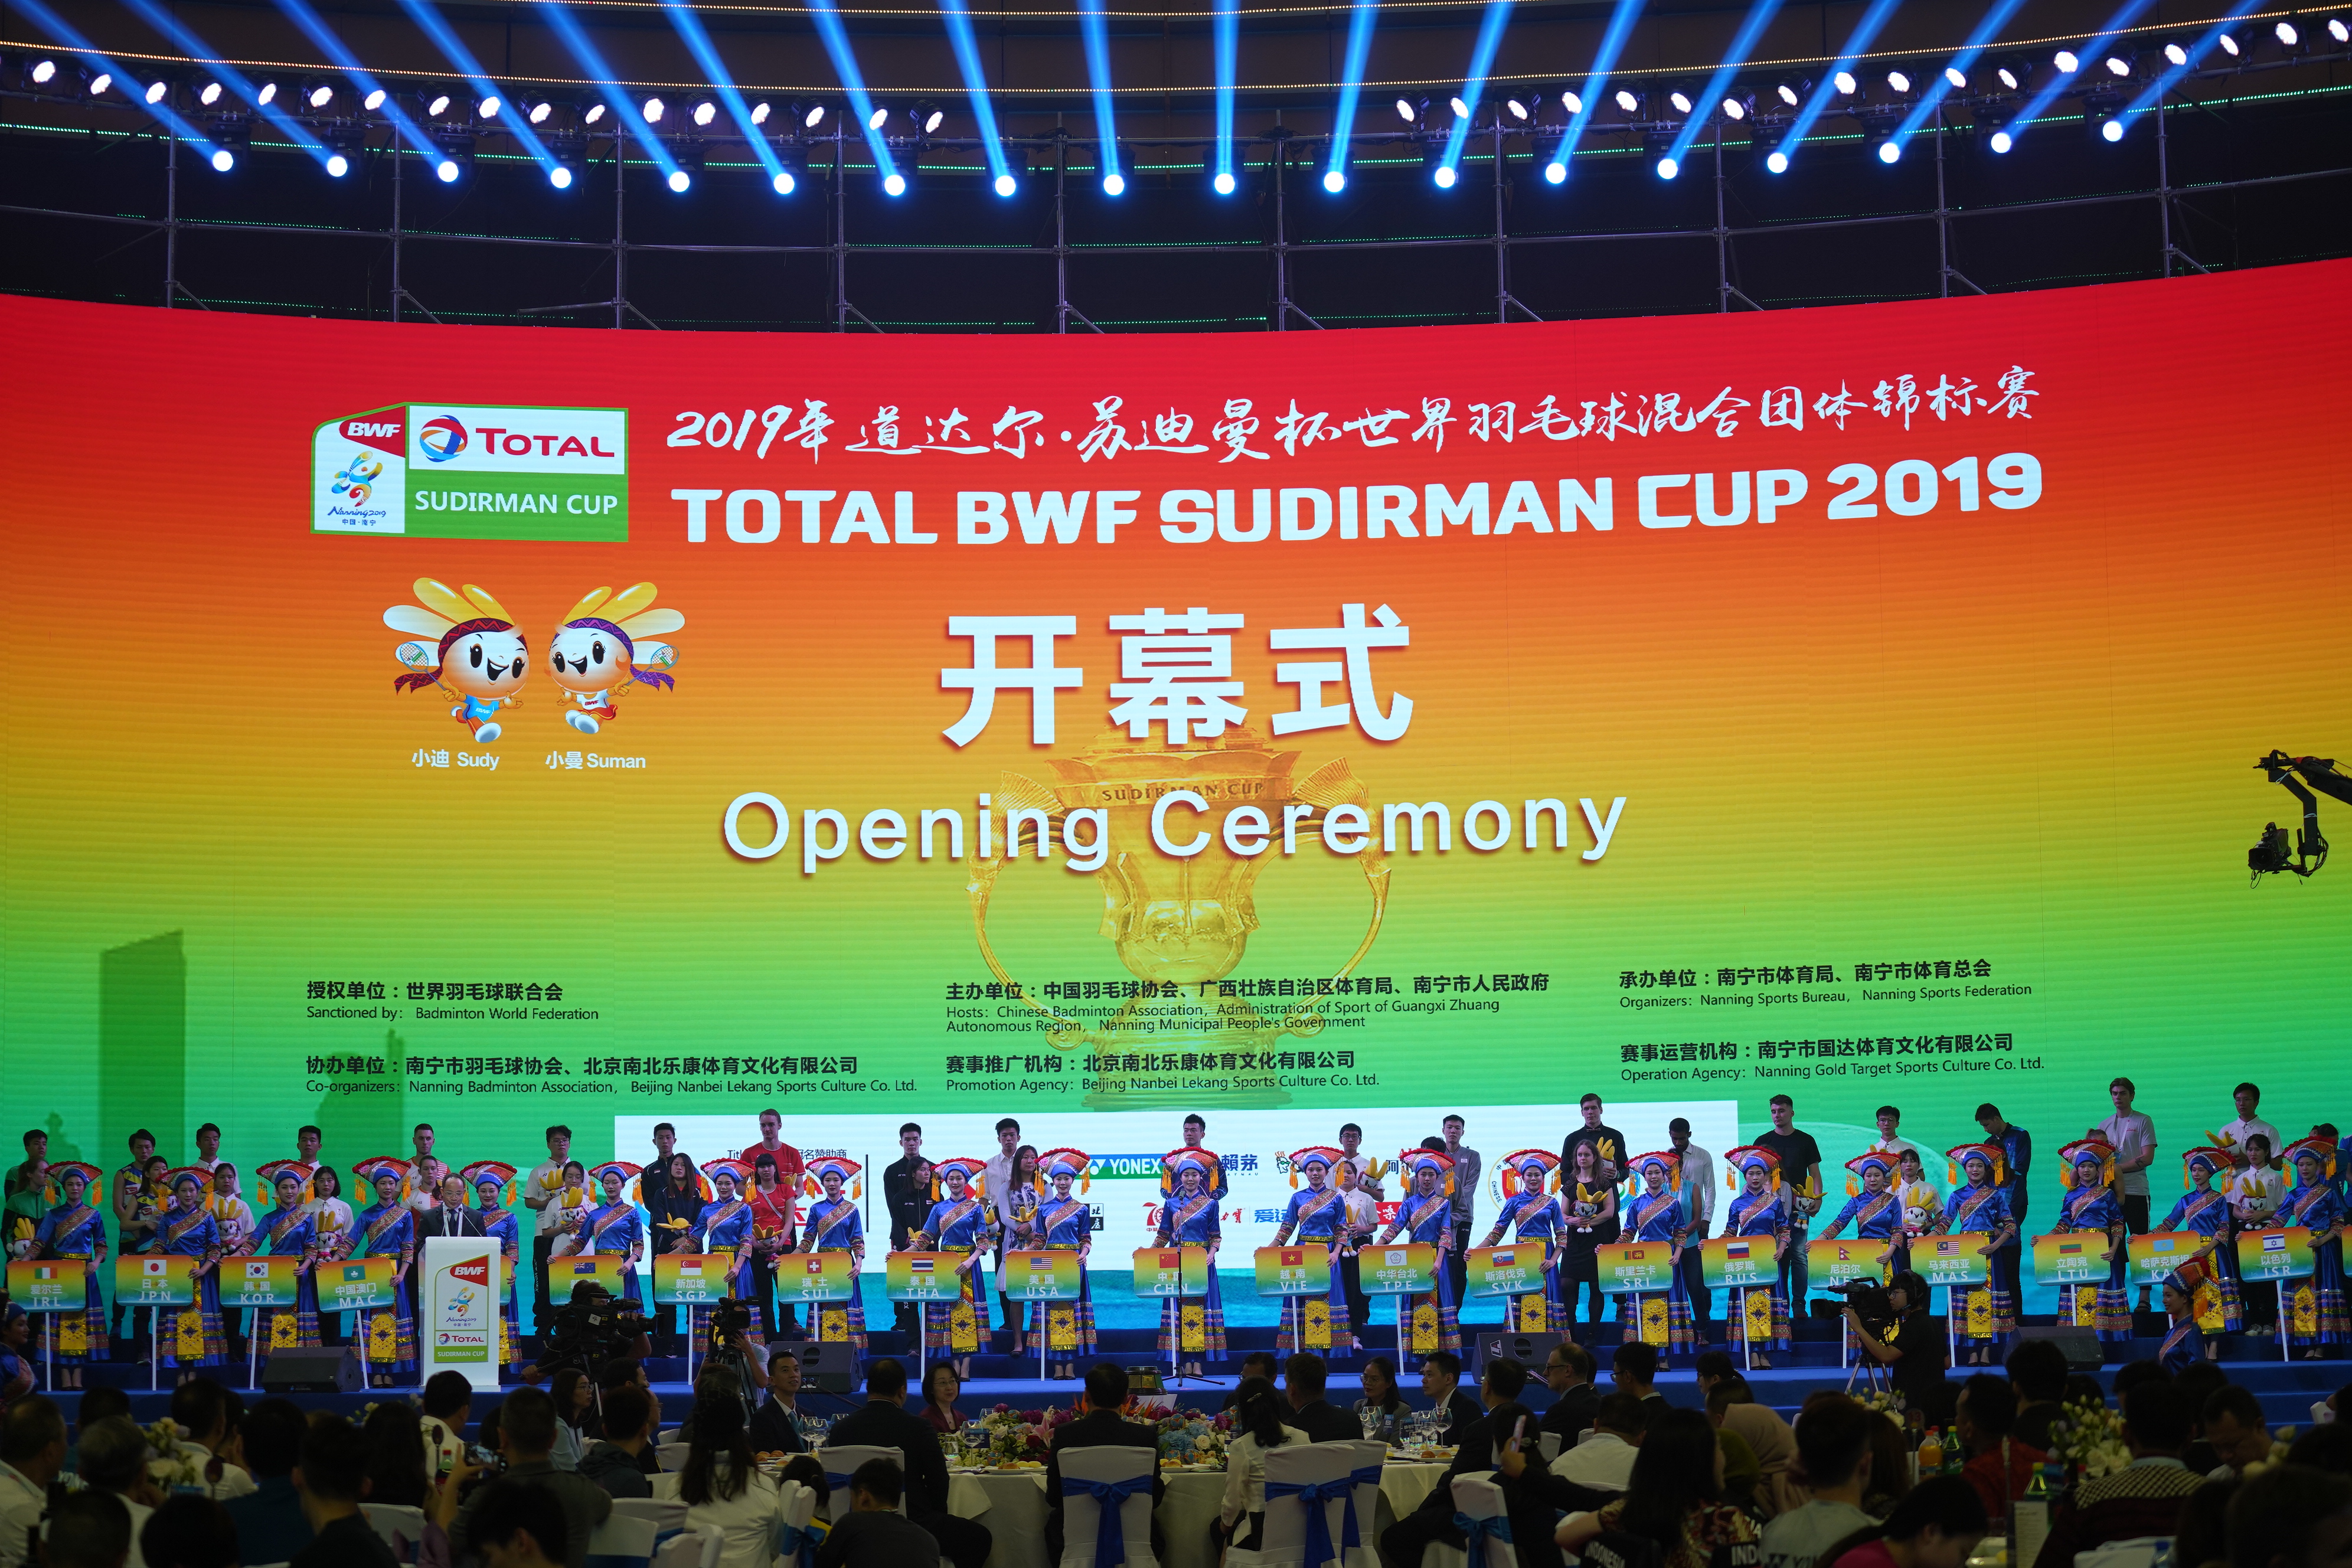 2019年蘇迪曼盃開幕式在南寧舉行